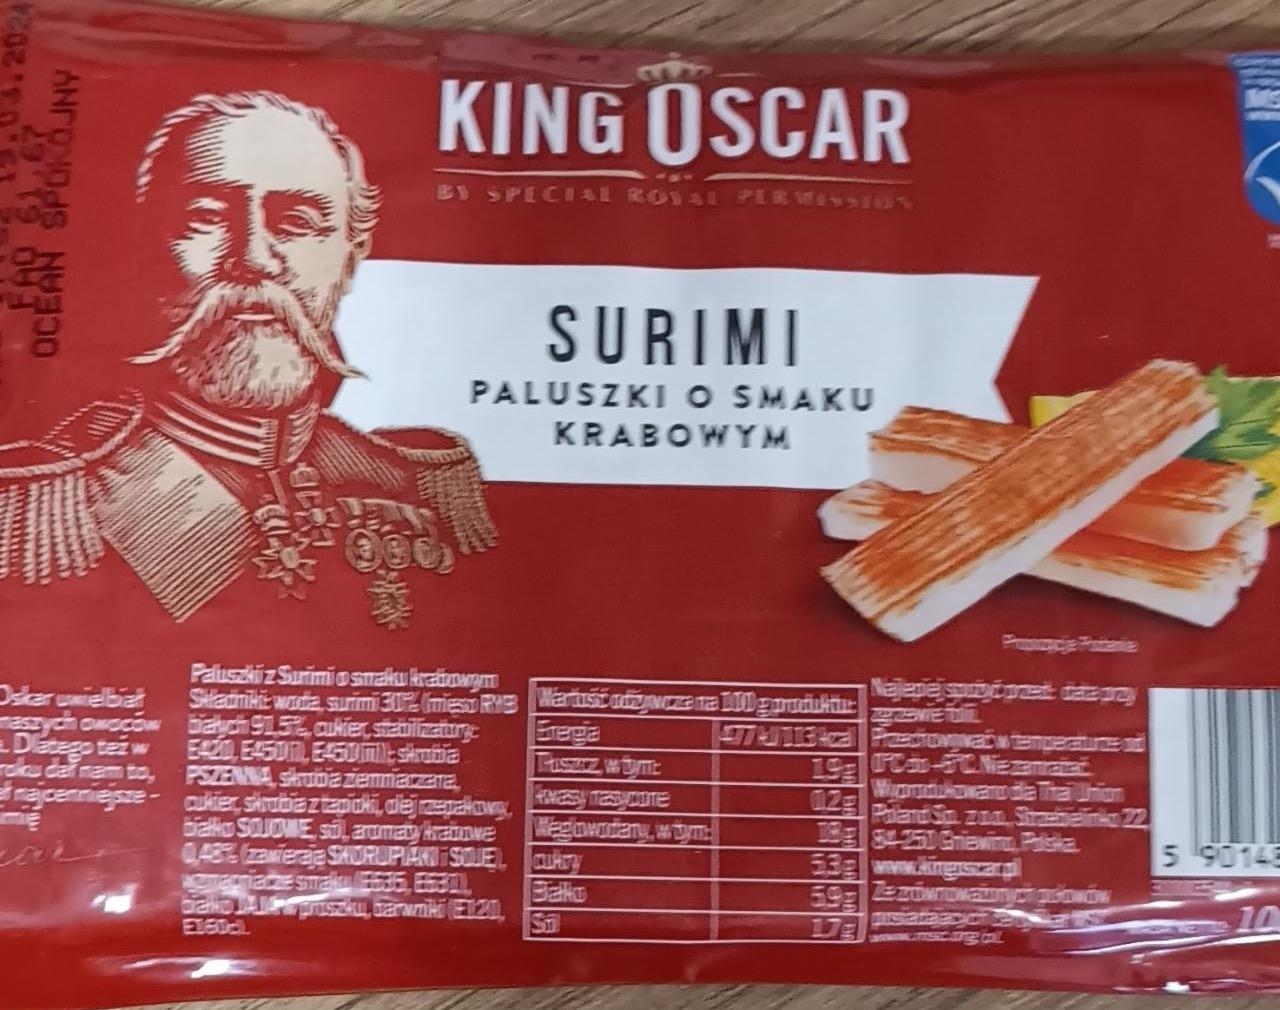 Zdjęcia - King Oscar Surimi paluszki o smaku krabowym 100 g